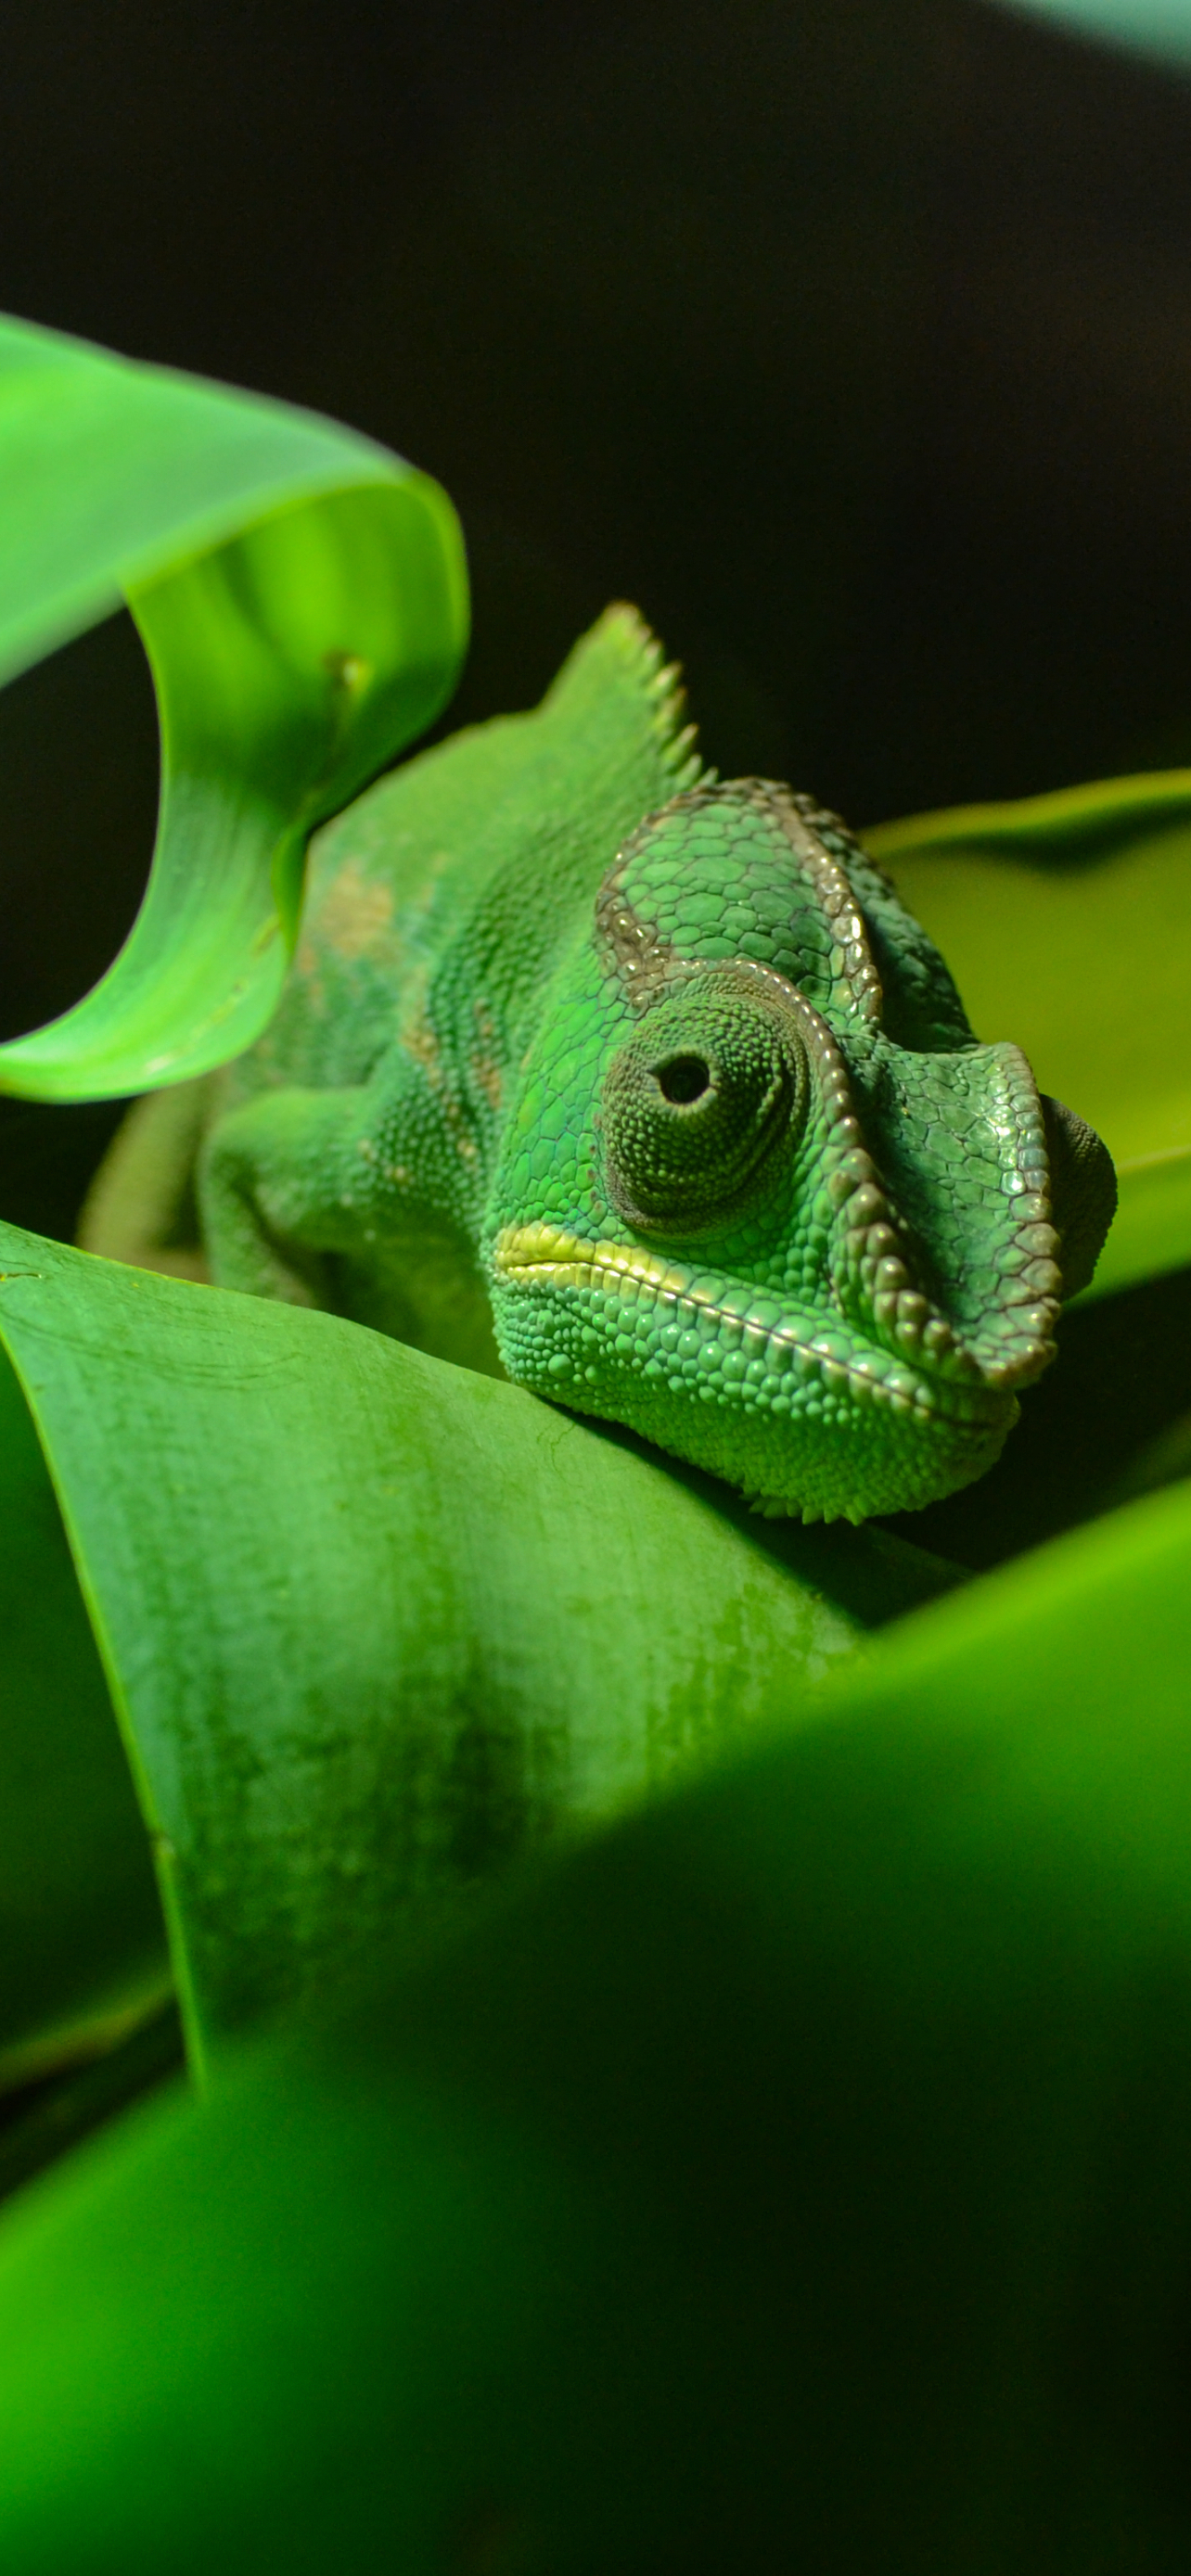 Descarga gratuita de fondo de pantalla para móvil de Animales, Lagarto, Reptil, Camaleón, Reptiles.